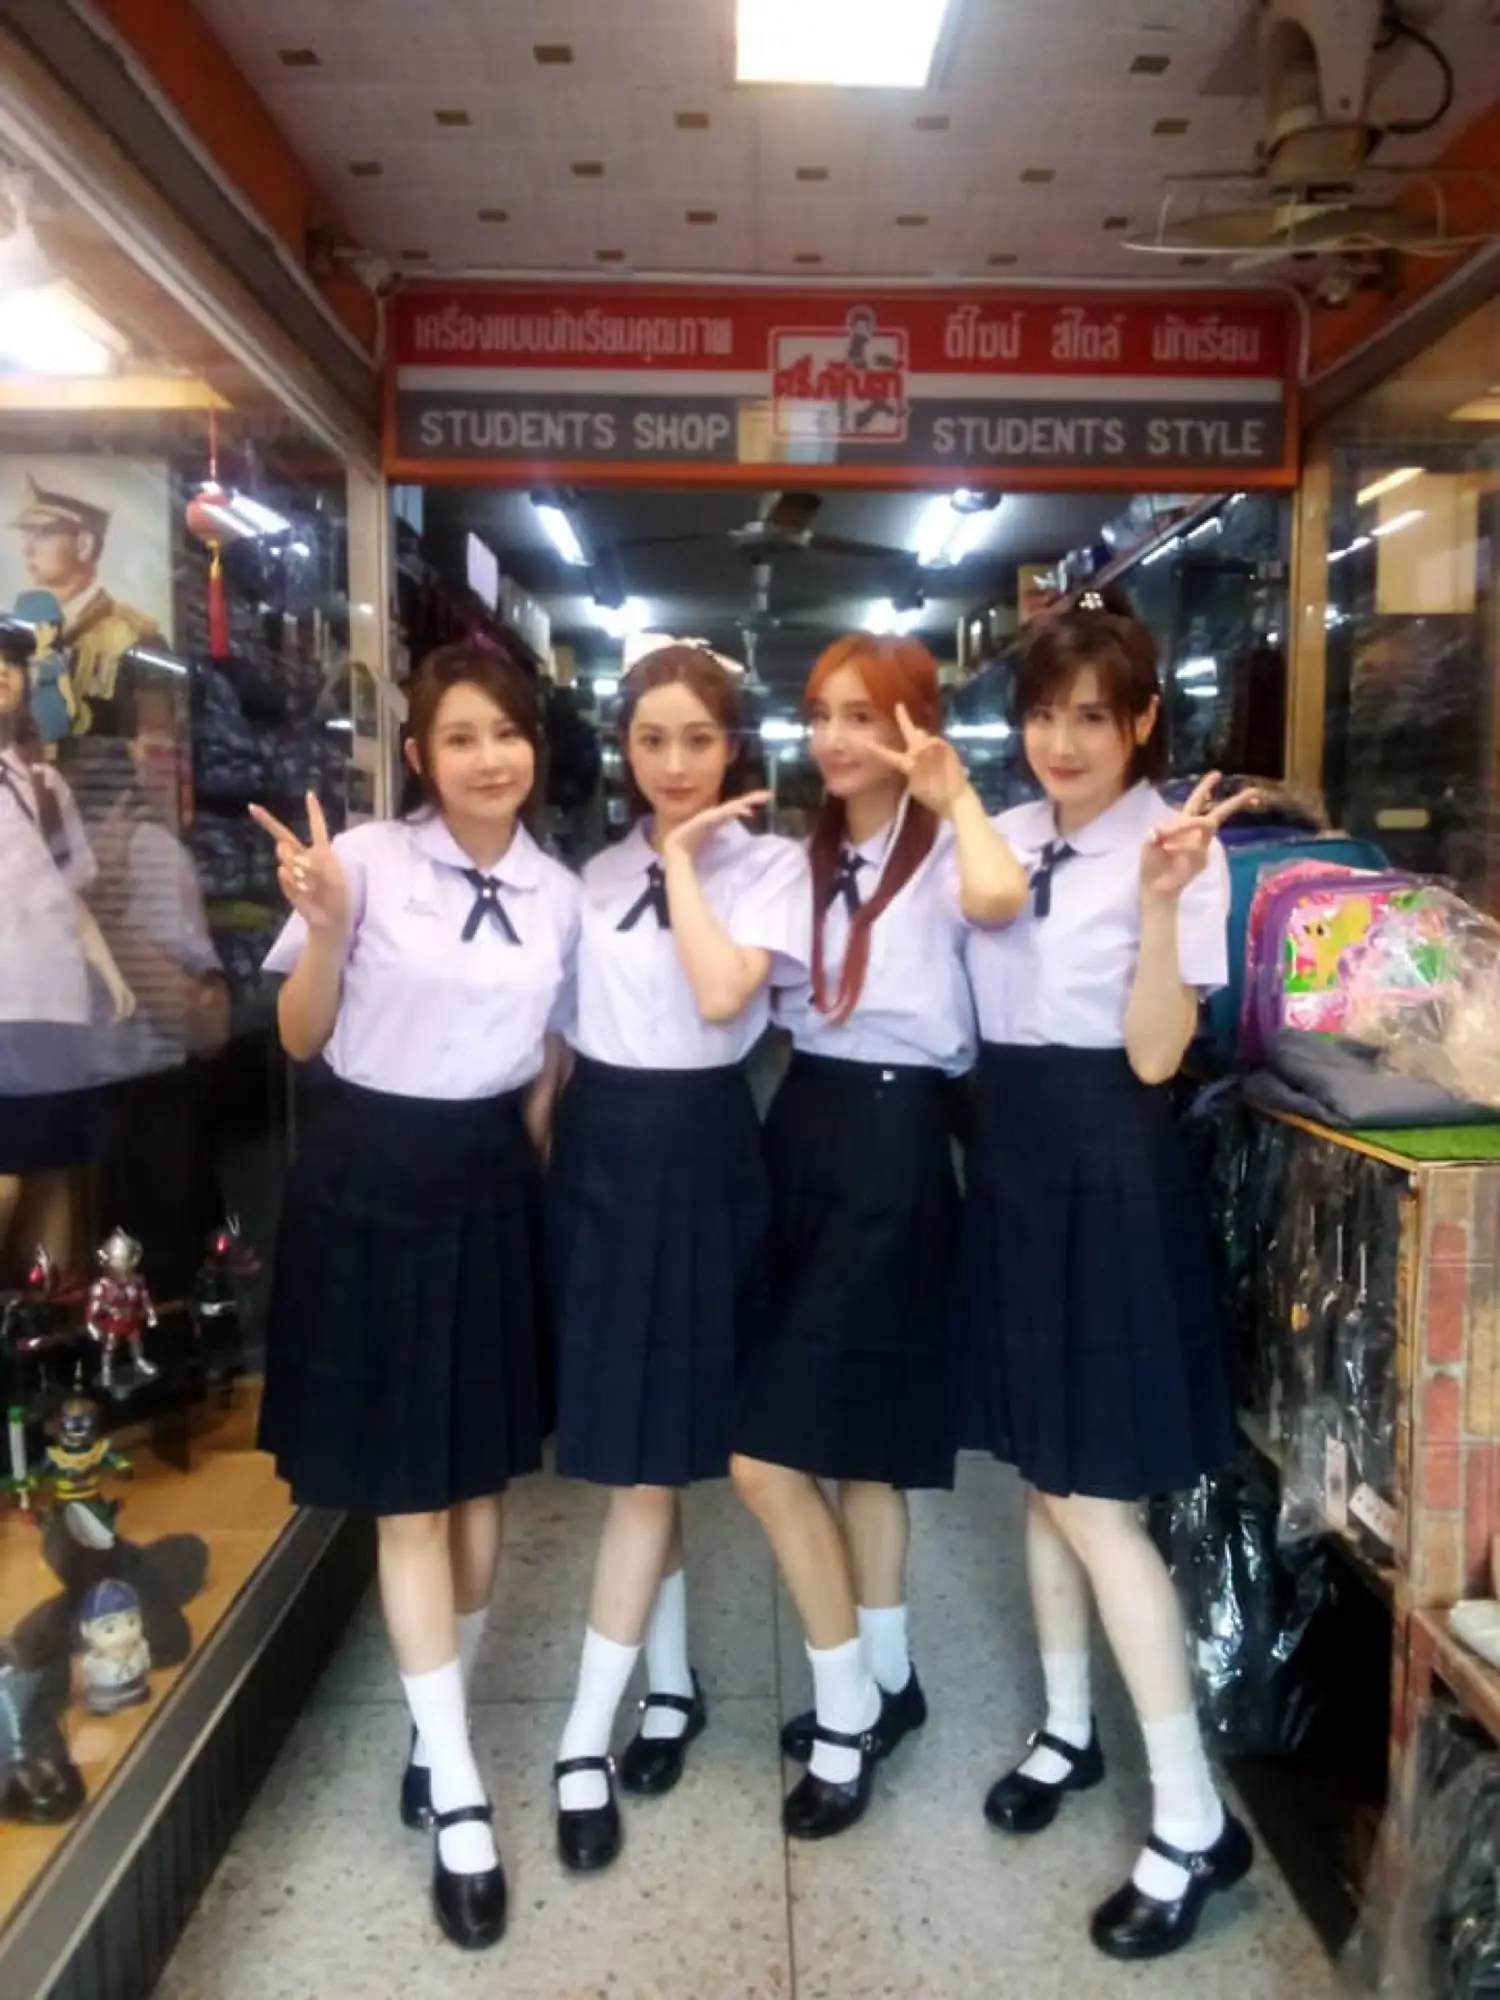 社群媒體掀起泰國校服熱潮（圖片來源：ชุดนักเรียนร้านศรีภัณฑ์臉書）